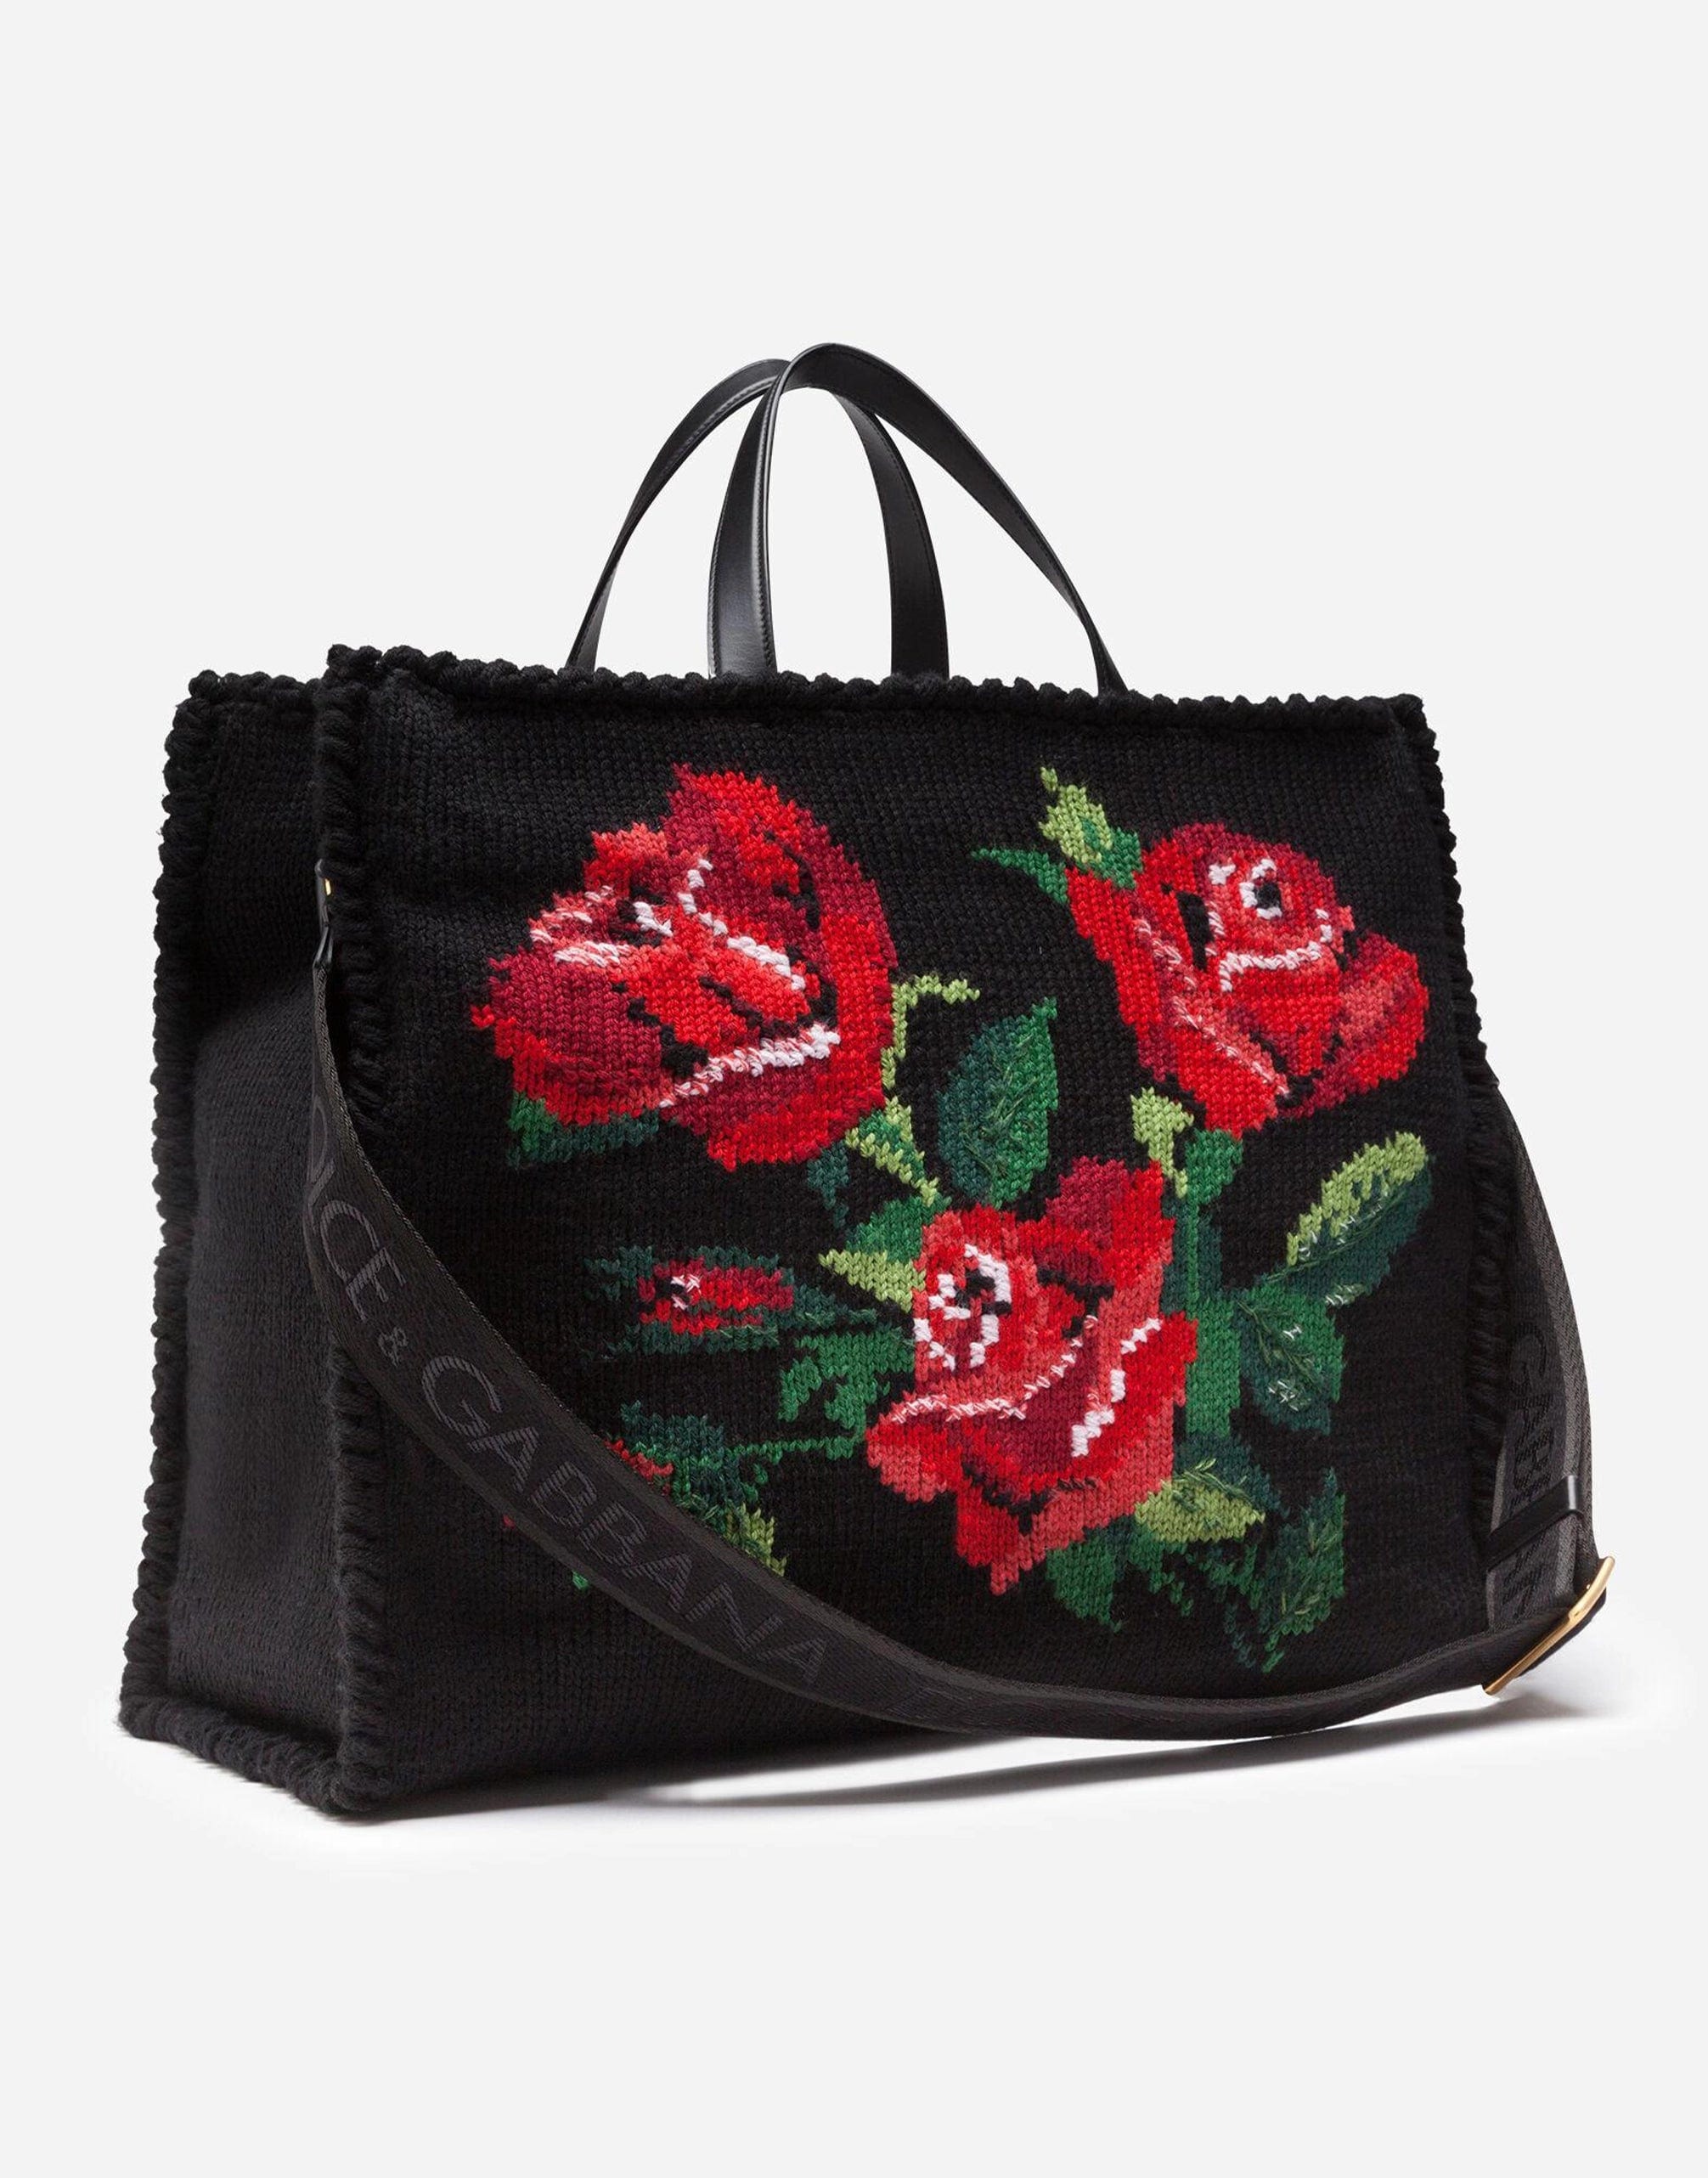 Большая сумка Beatrice с вышитыми розами